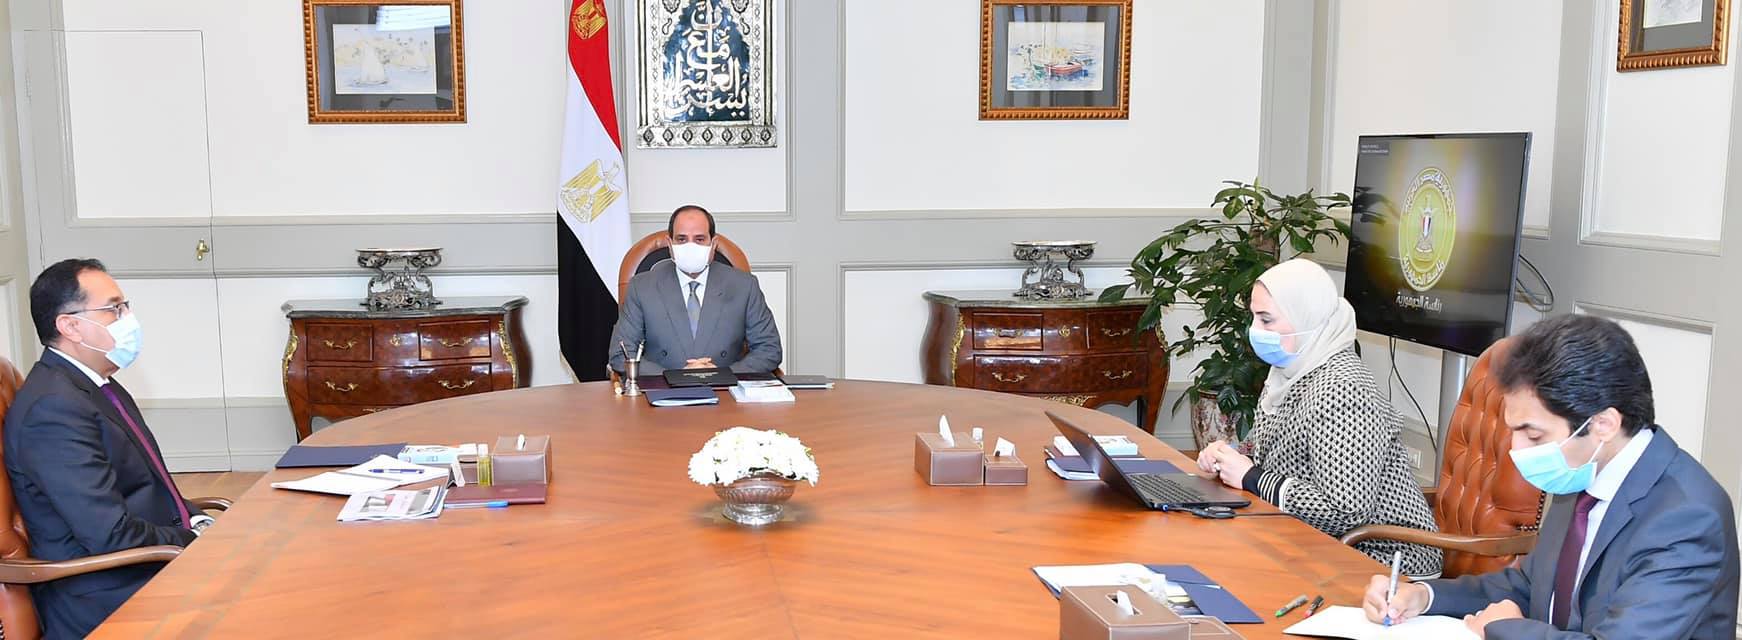   الرئيس السيسى يستعرض المنظومة الموحدة لإنتاج الأطراف الصناعية في مصر